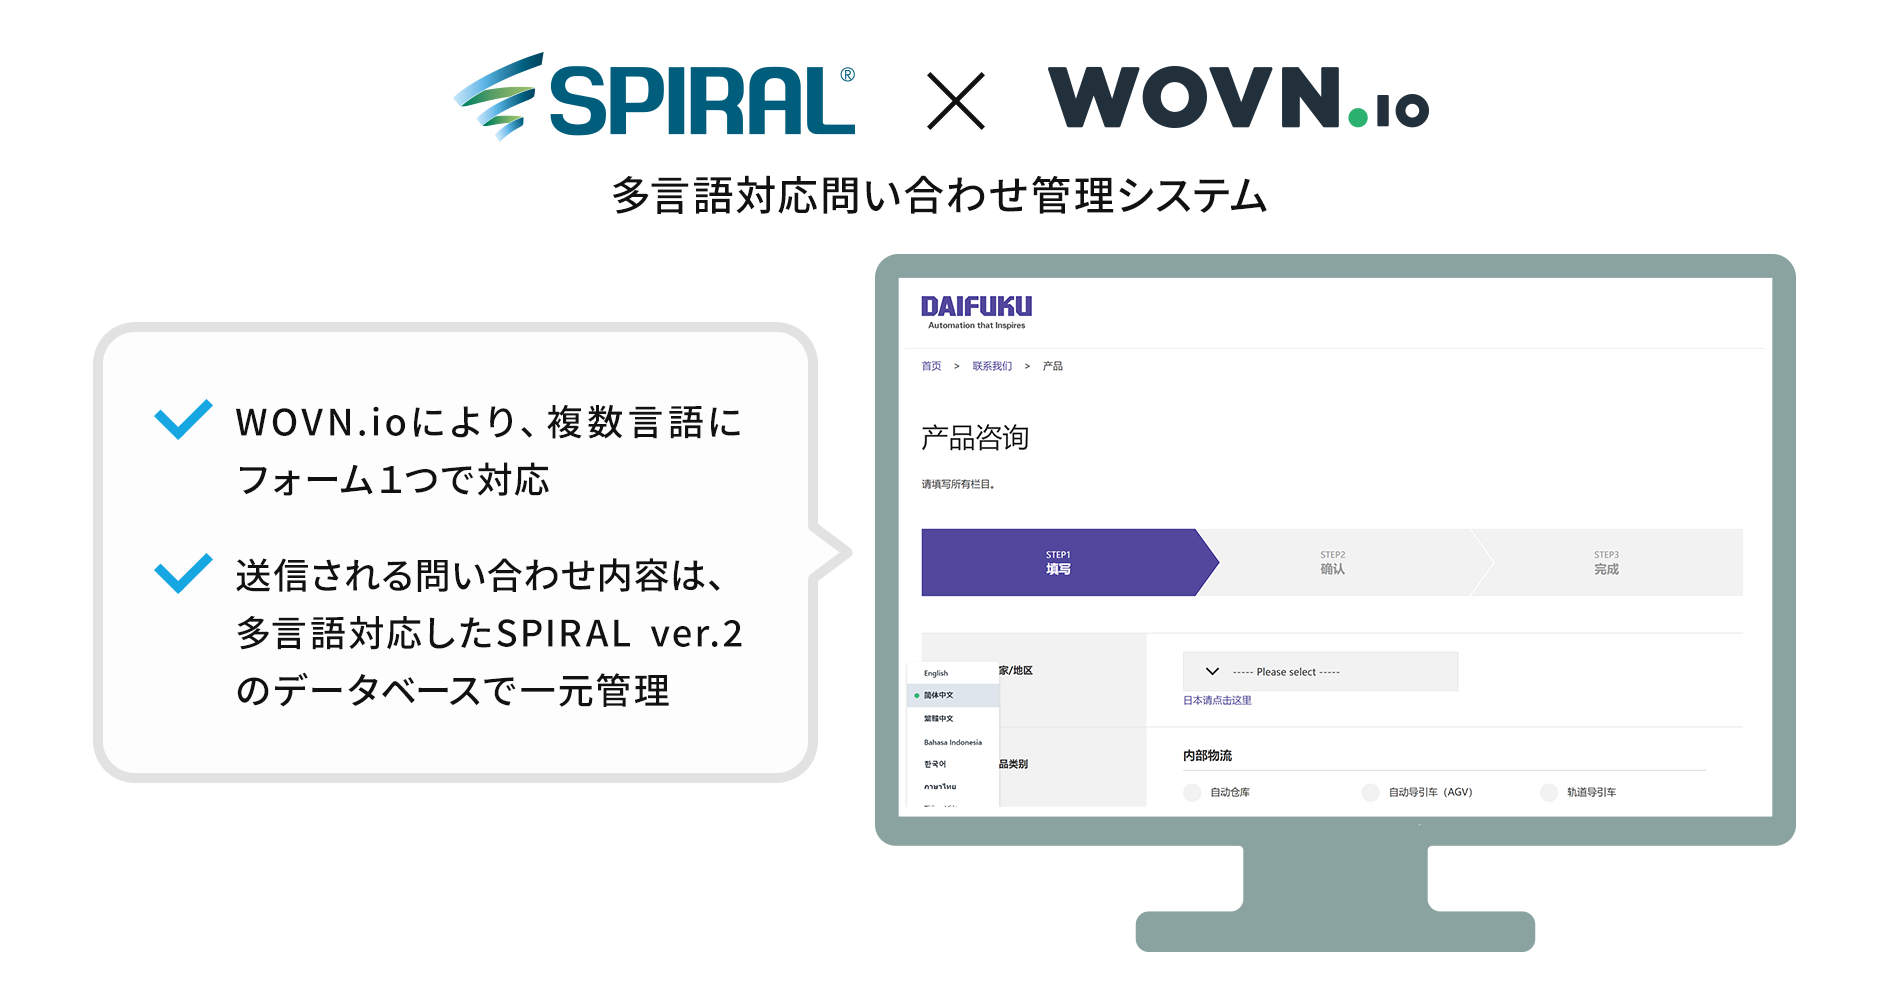 SPIRAL® ✕ WOVN.io　多言語対応問い合わせ管理システム：WOVN.ioにより、複数言語にフォーム1つで対応。送信される問い合わせ内容は、多言語対応したSPIRAL® ver.2のデータベースで一元管理